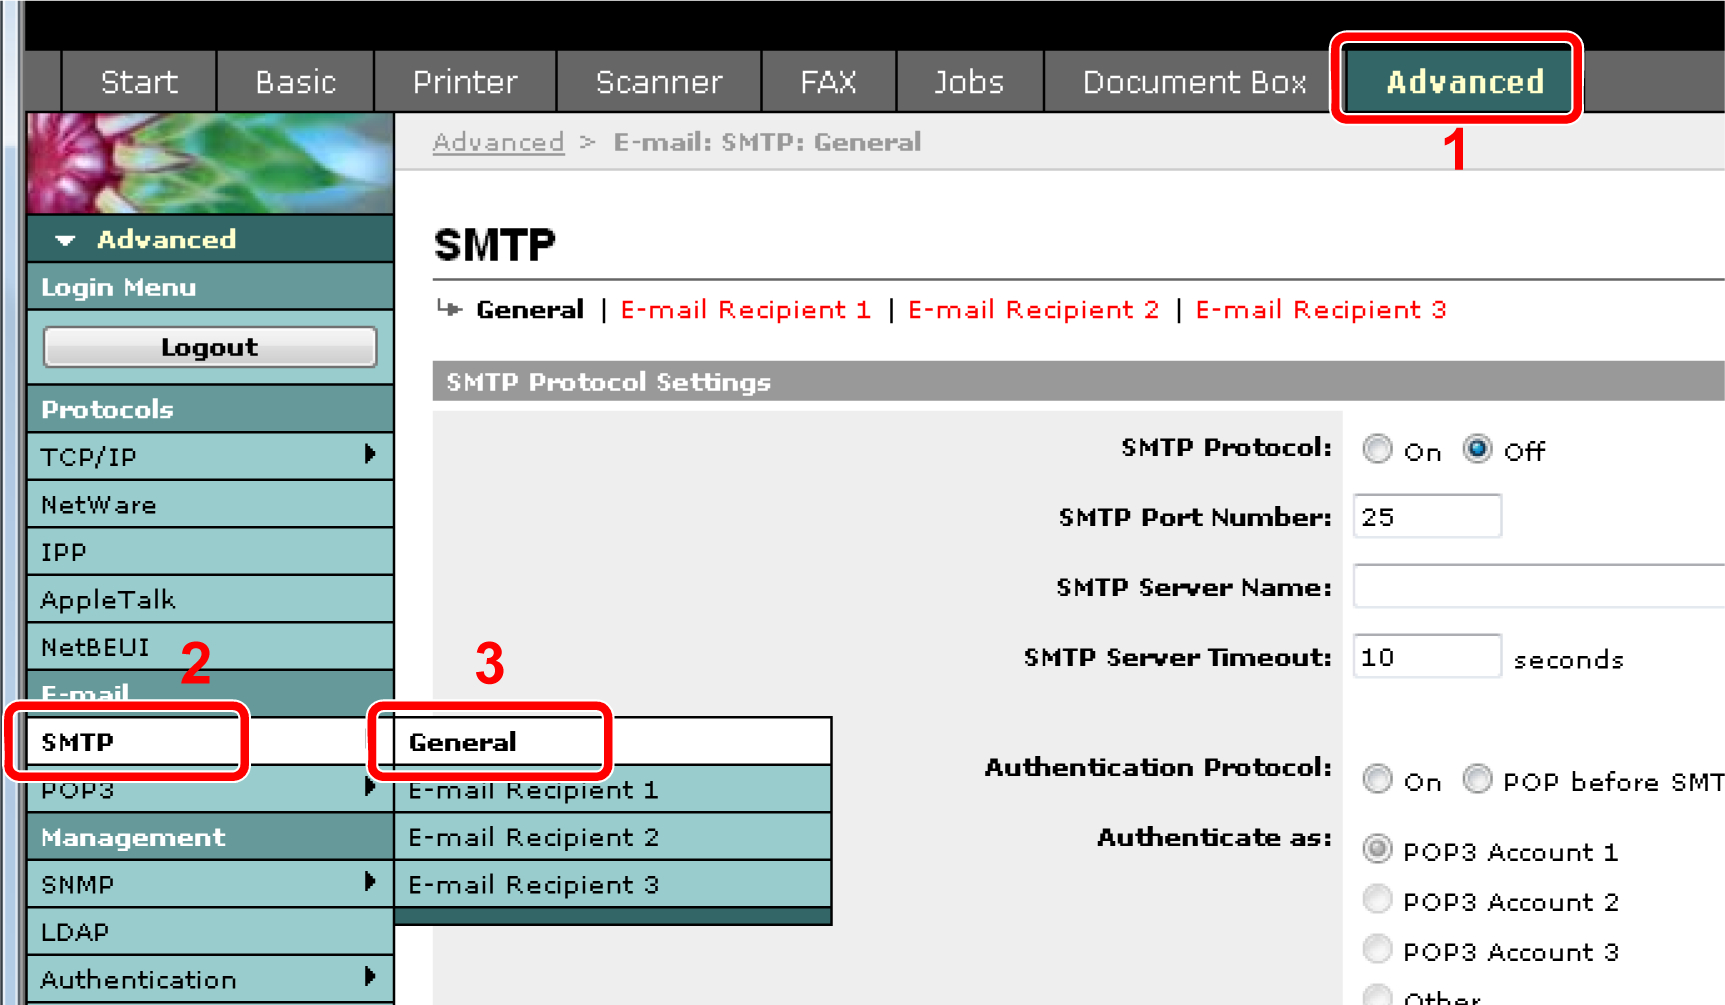 Προετοιμασία πριν από τη χρήση > Embedded Web Server (Ρυθμίσεις για e-mail) Αποστολή E-mail Ο καθορισμός των ρυθμίσεων SMTP επιτρέπει την αποστολή εικόνων που έχουν φορτωθεί σε αυτό το μηχάνημα, ως